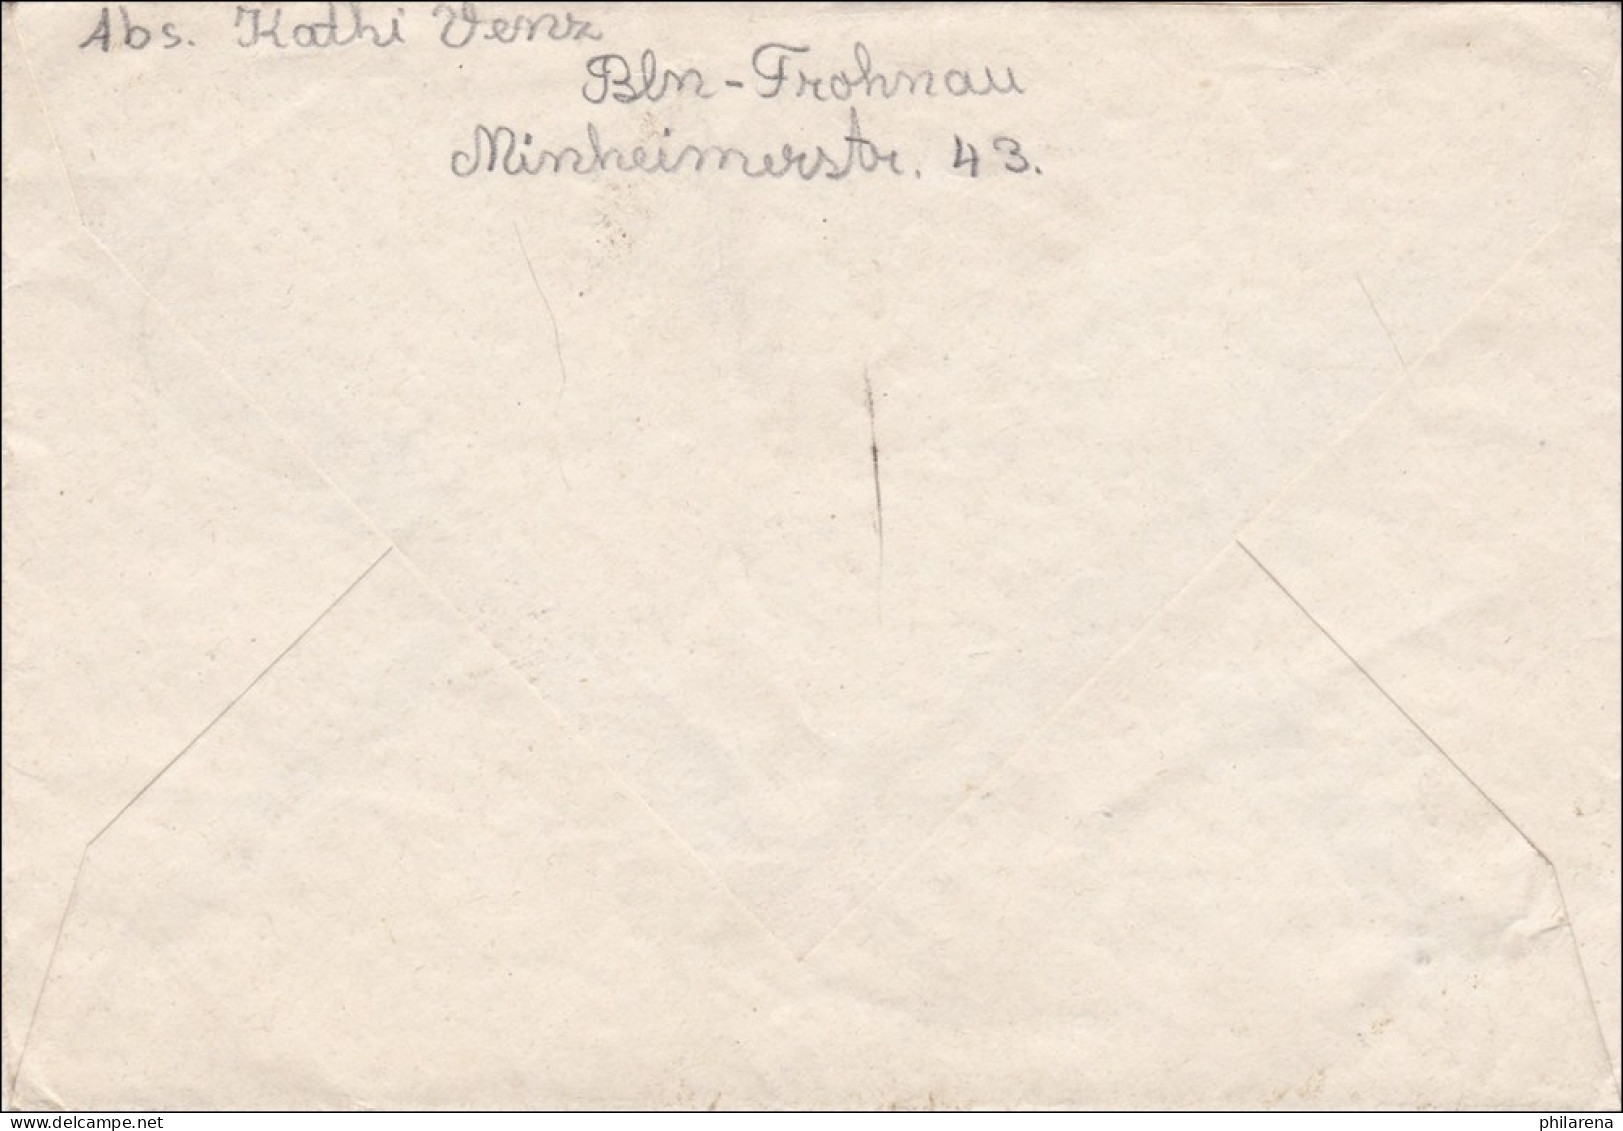 Luftpost 1949 Nach Niedernhausen - Brieven En Documenten